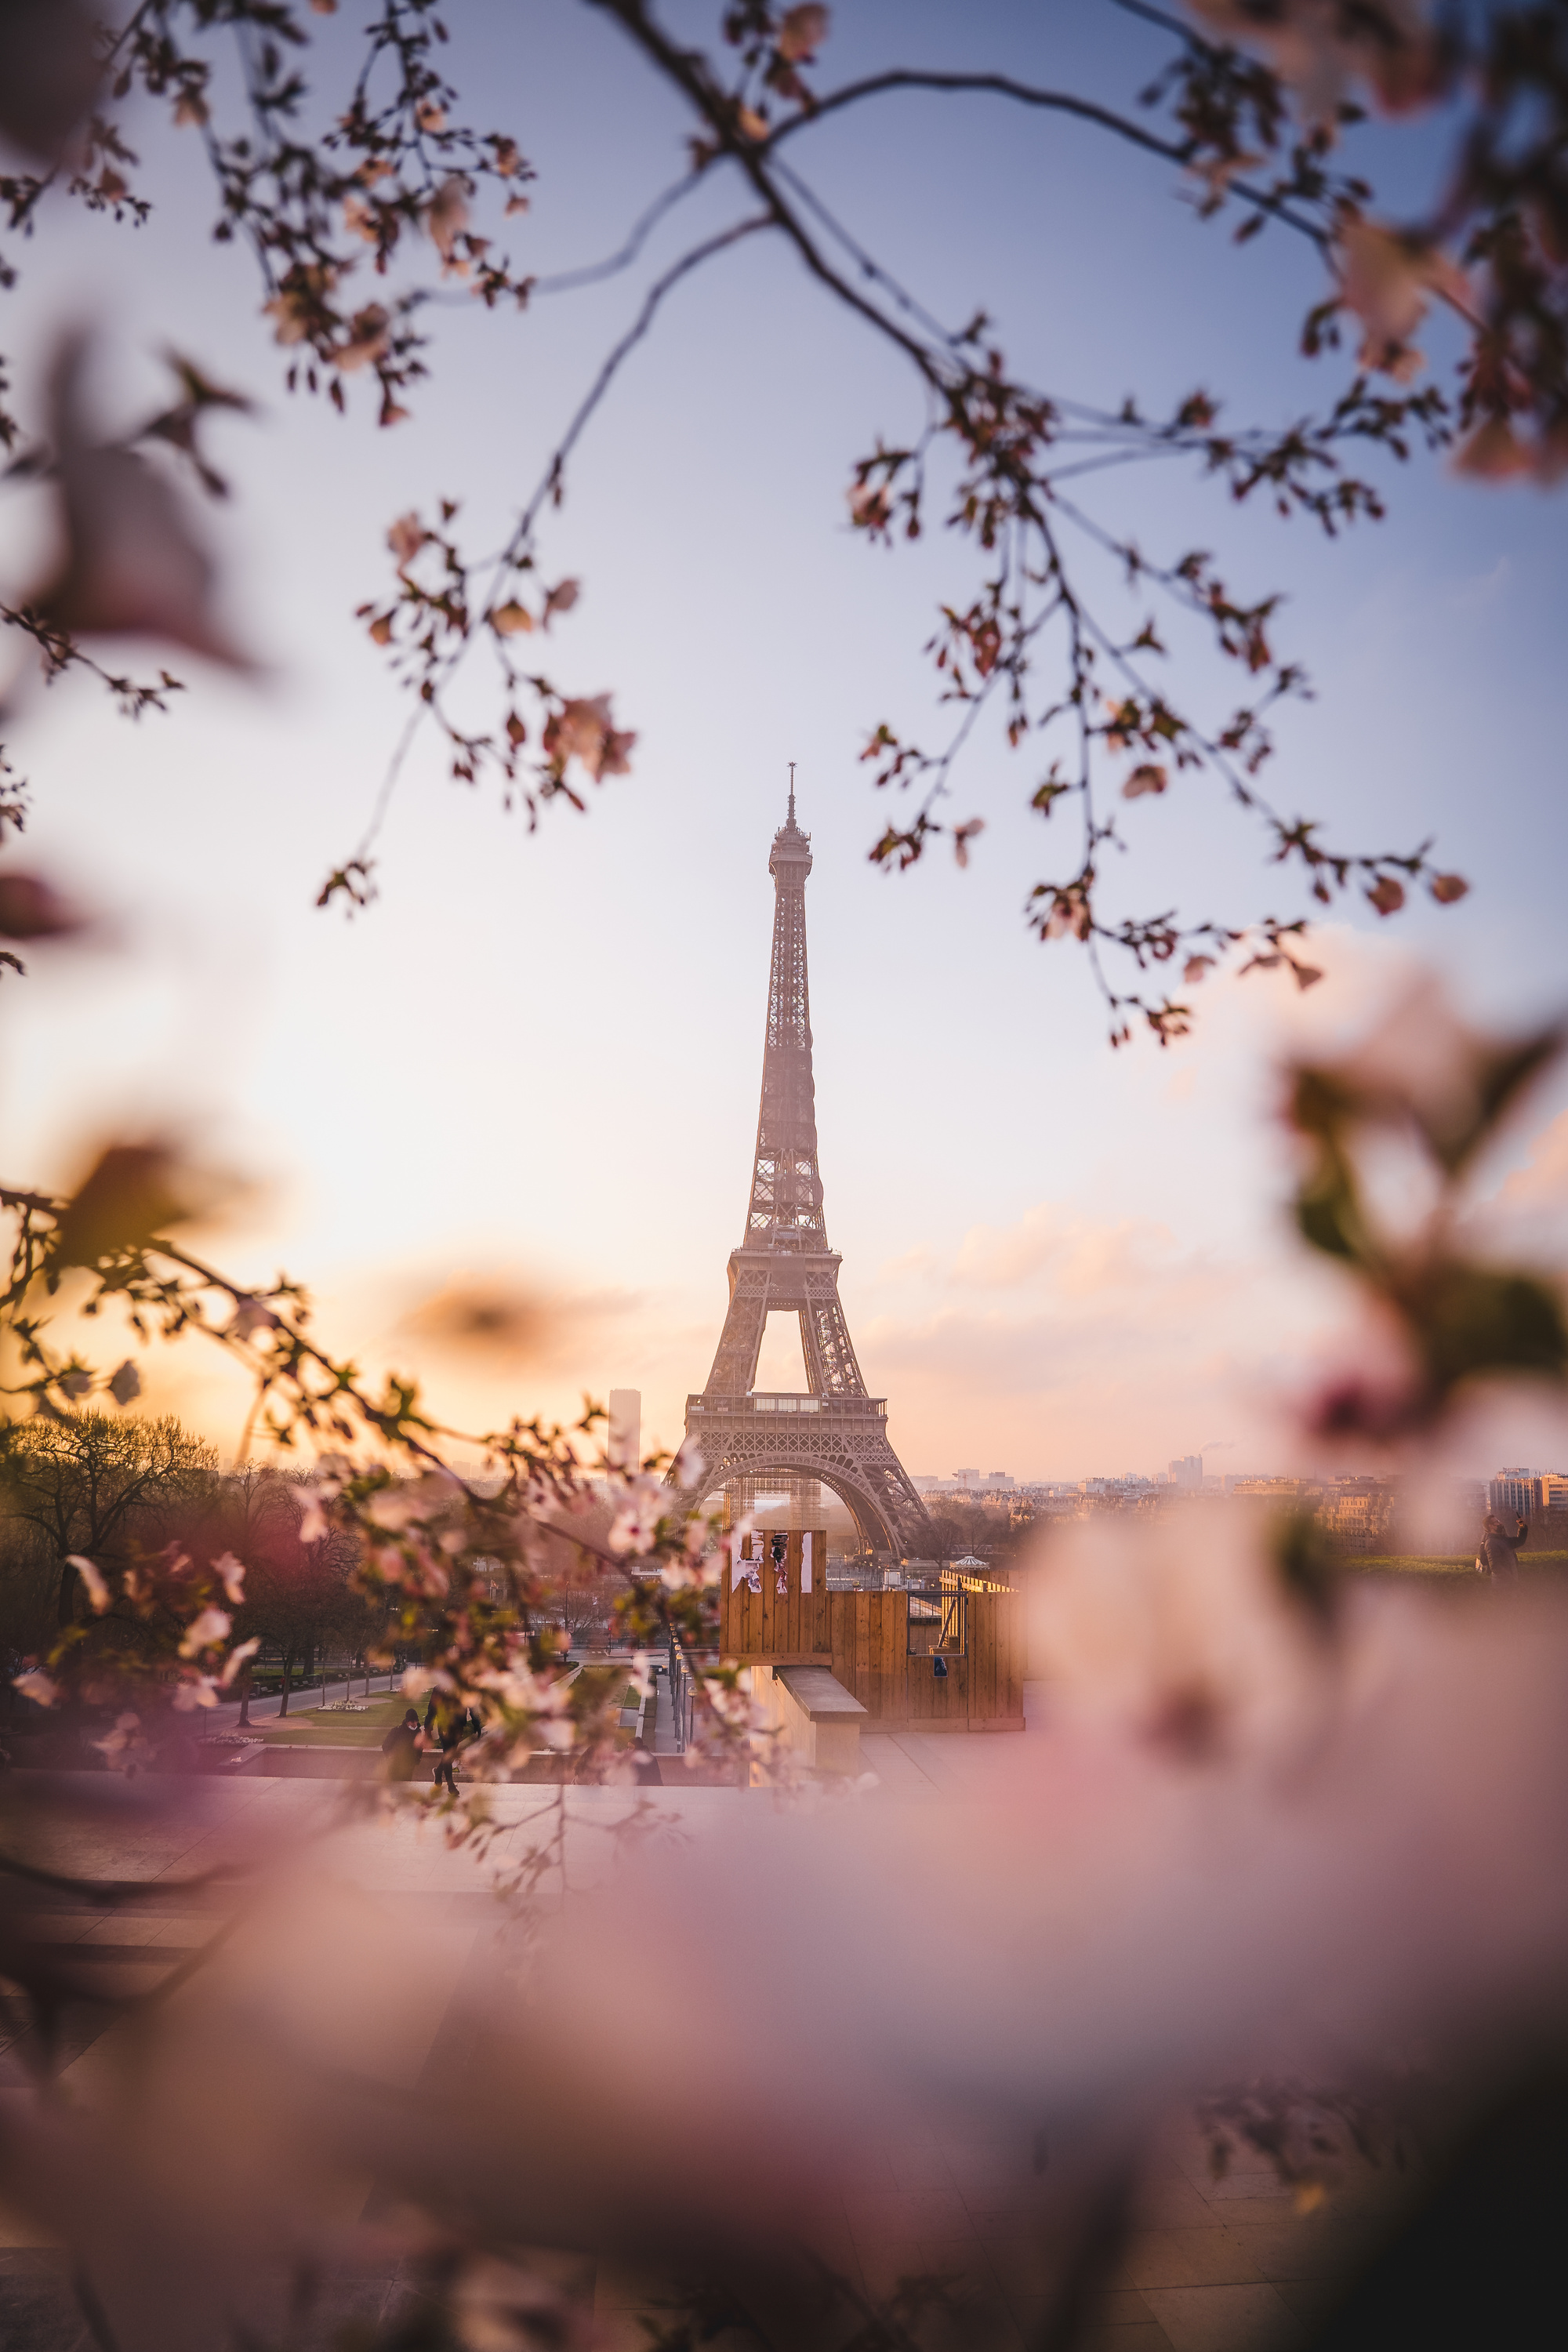 An Eiffel Tower Under the Clear Sky